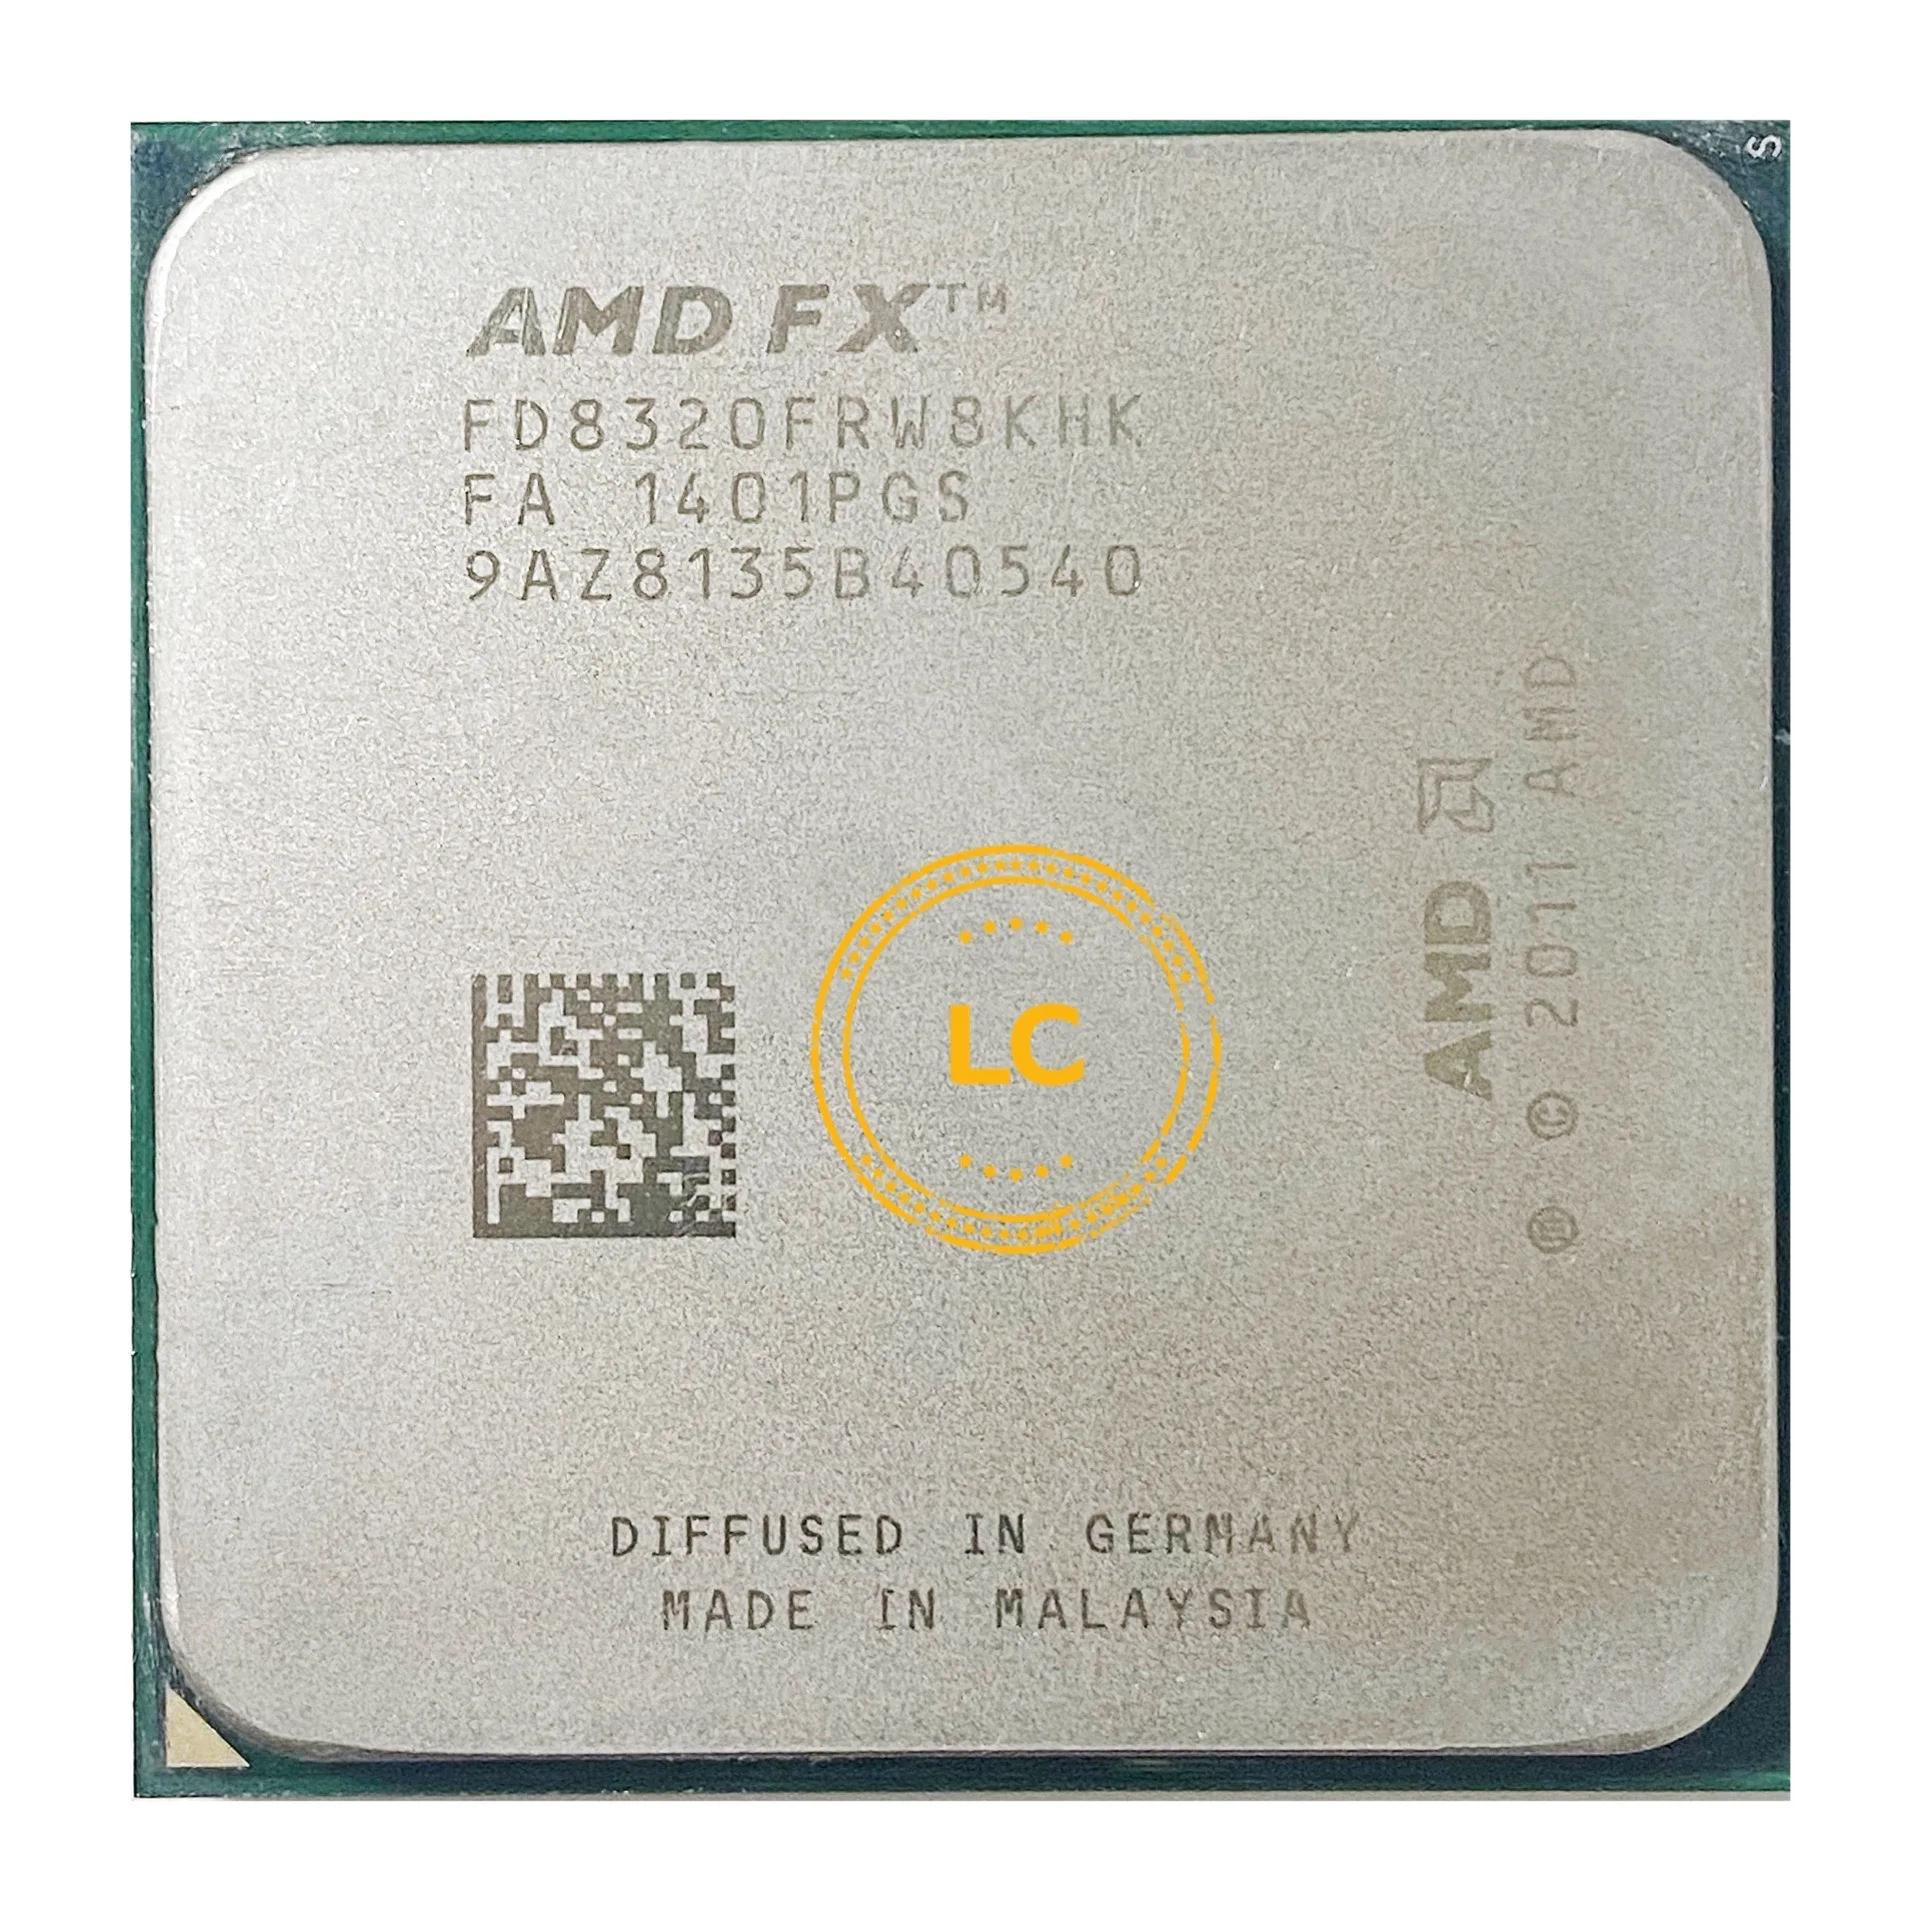 AMD FX ø FX8320 FX 8320, 3.5 GHz 8 ھ CPU μ, FD8320FRW8KHK  AM3 +